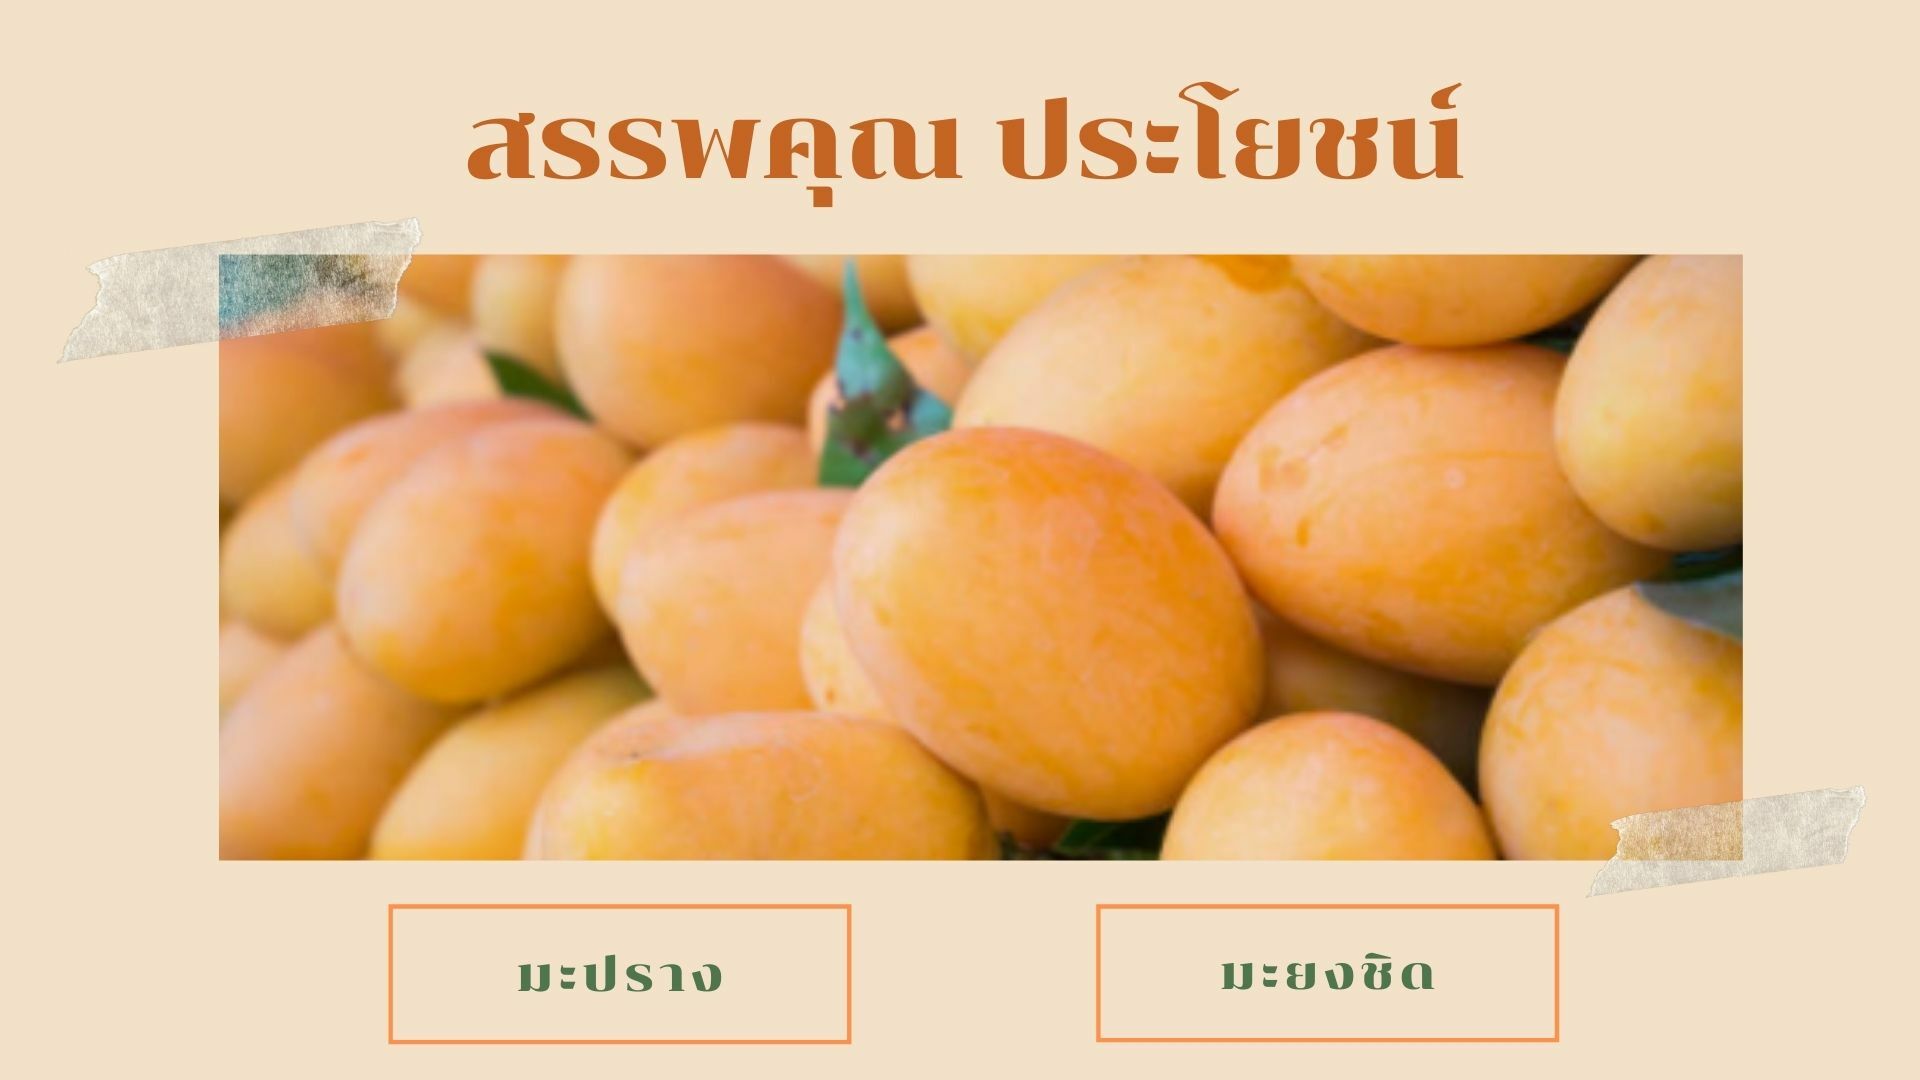 มะยงชิด มะปราง ต่างกันอย่างไร ? ไขคำตอบความต่าง ผลไม้หน้าร้อน | Thaiger  ข่าวไทย